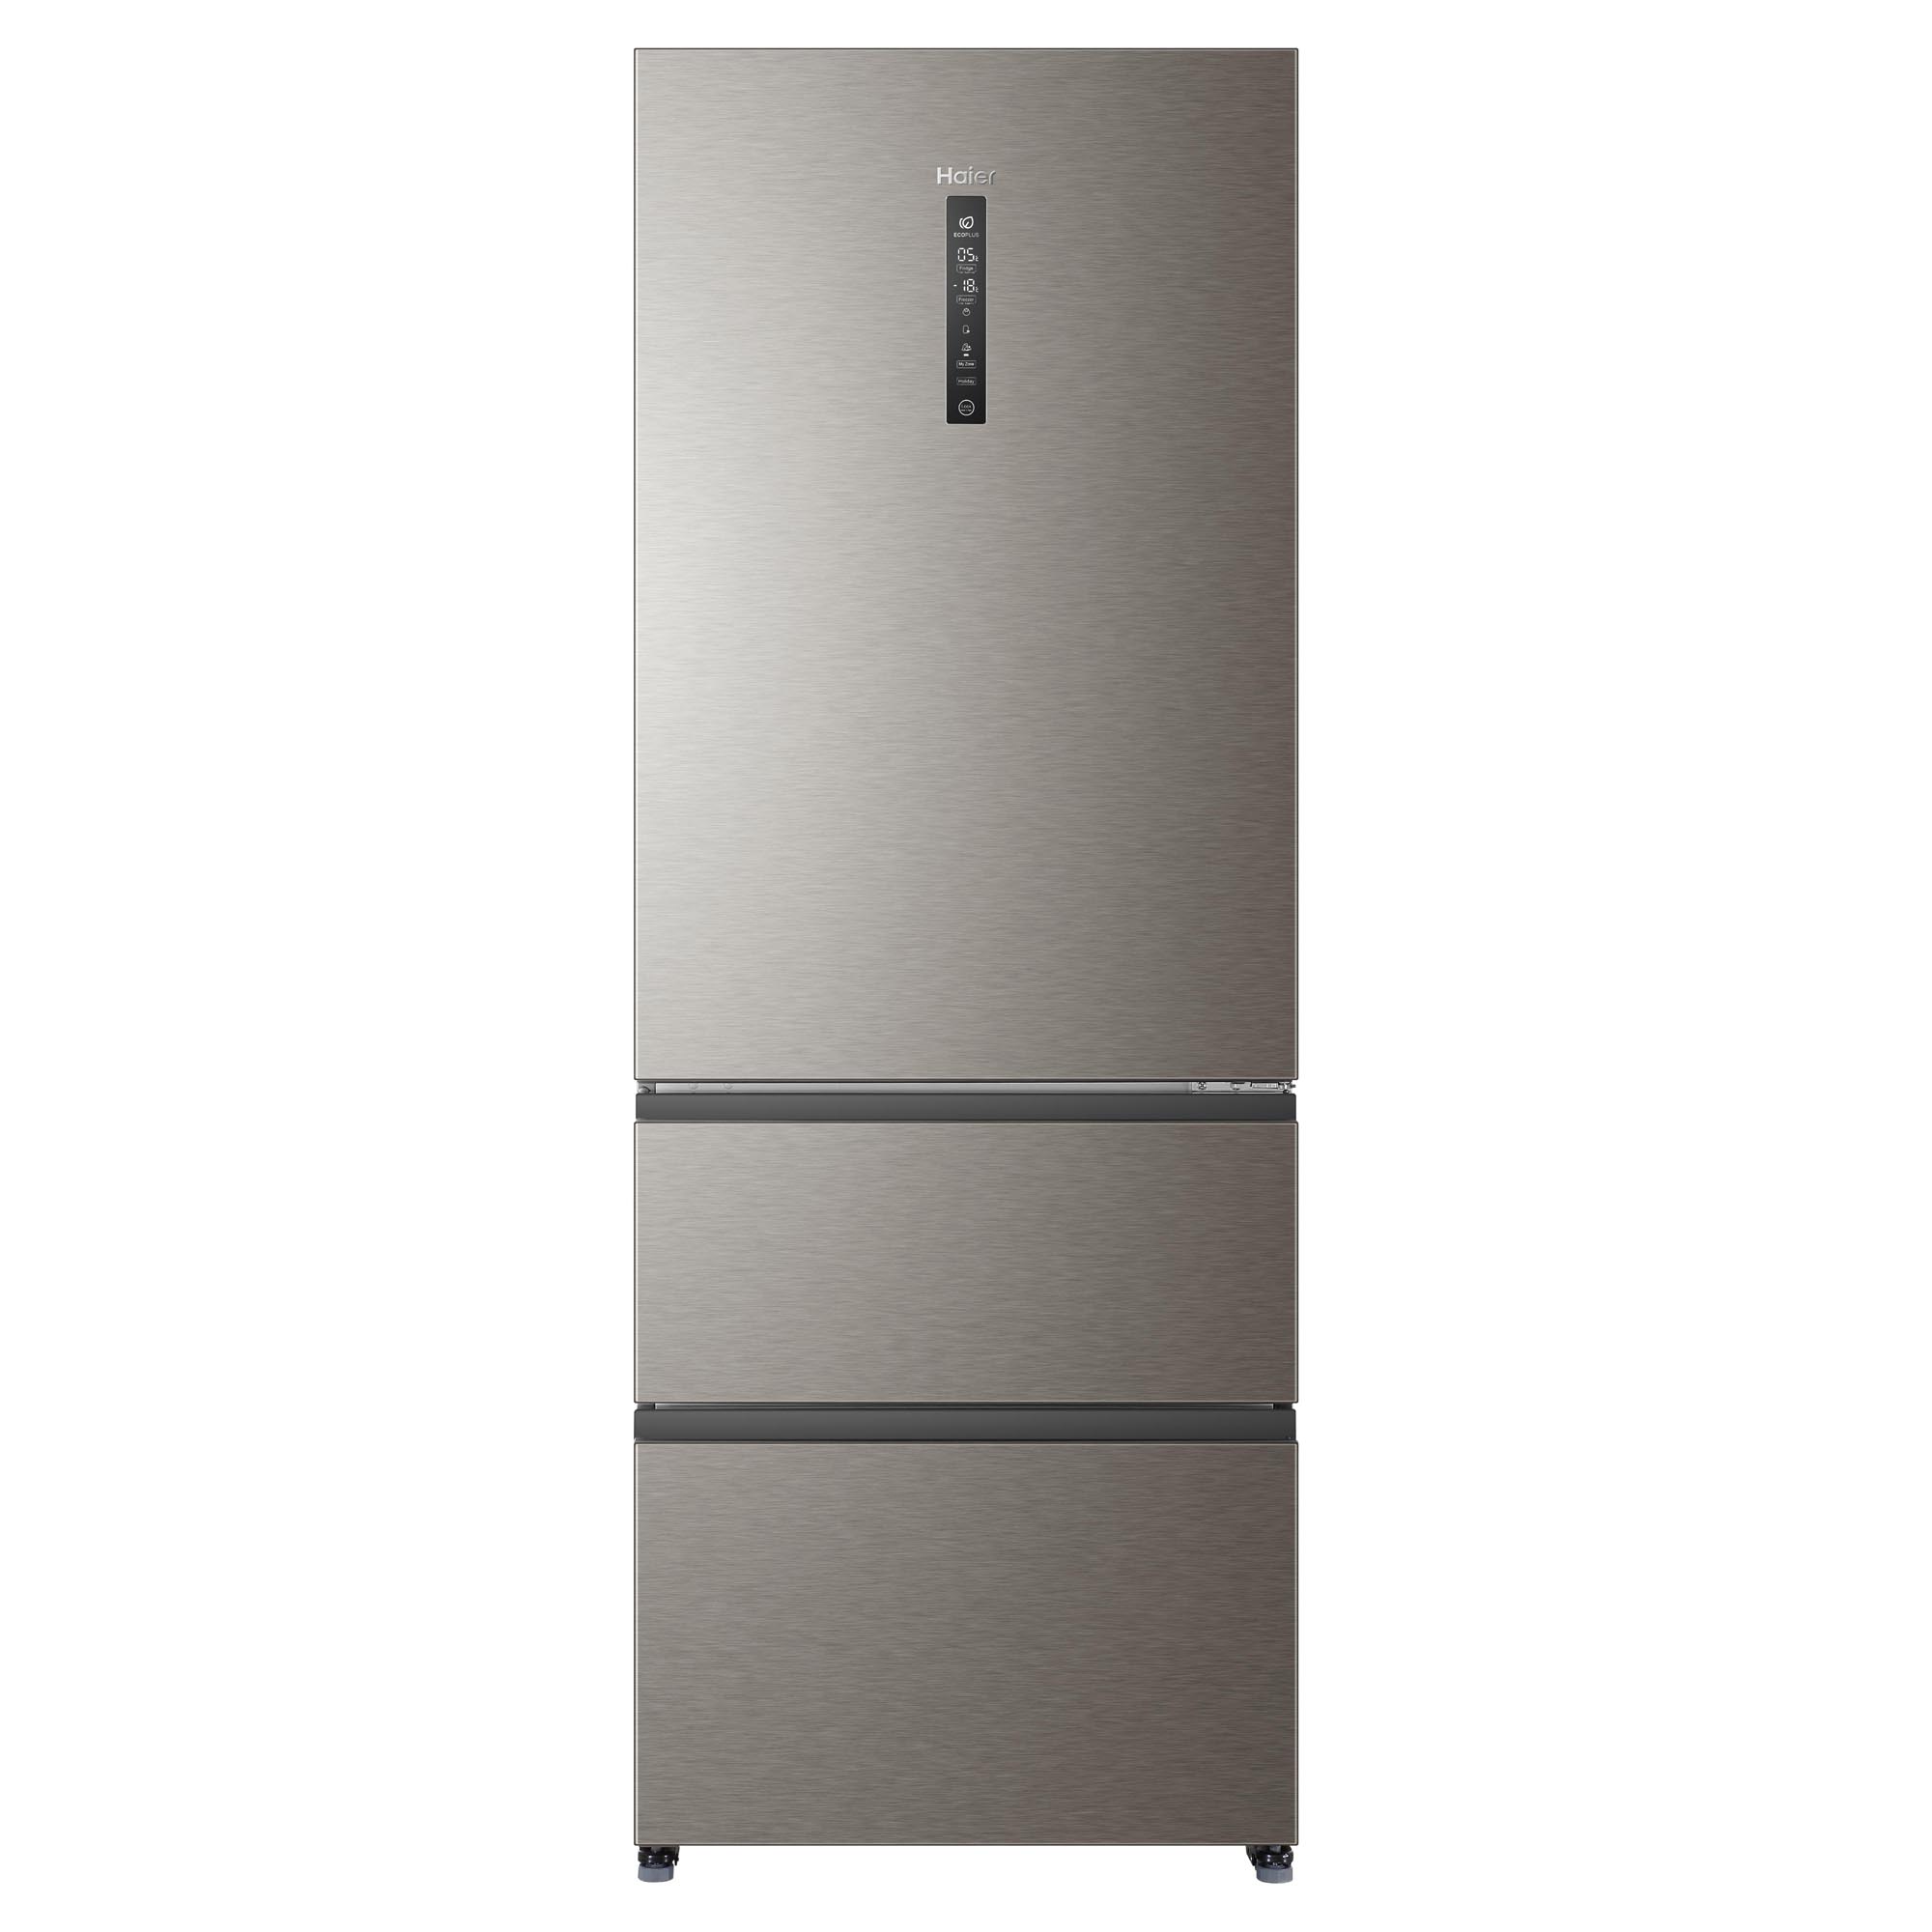 Холодильник хайер производитель. Холодильник Haier a4f742cmg. Холодильник Haier a4f742cmg, серебристый. Холодильник Хайер 742. Холодильник многодверный Haier a4f742cmg.